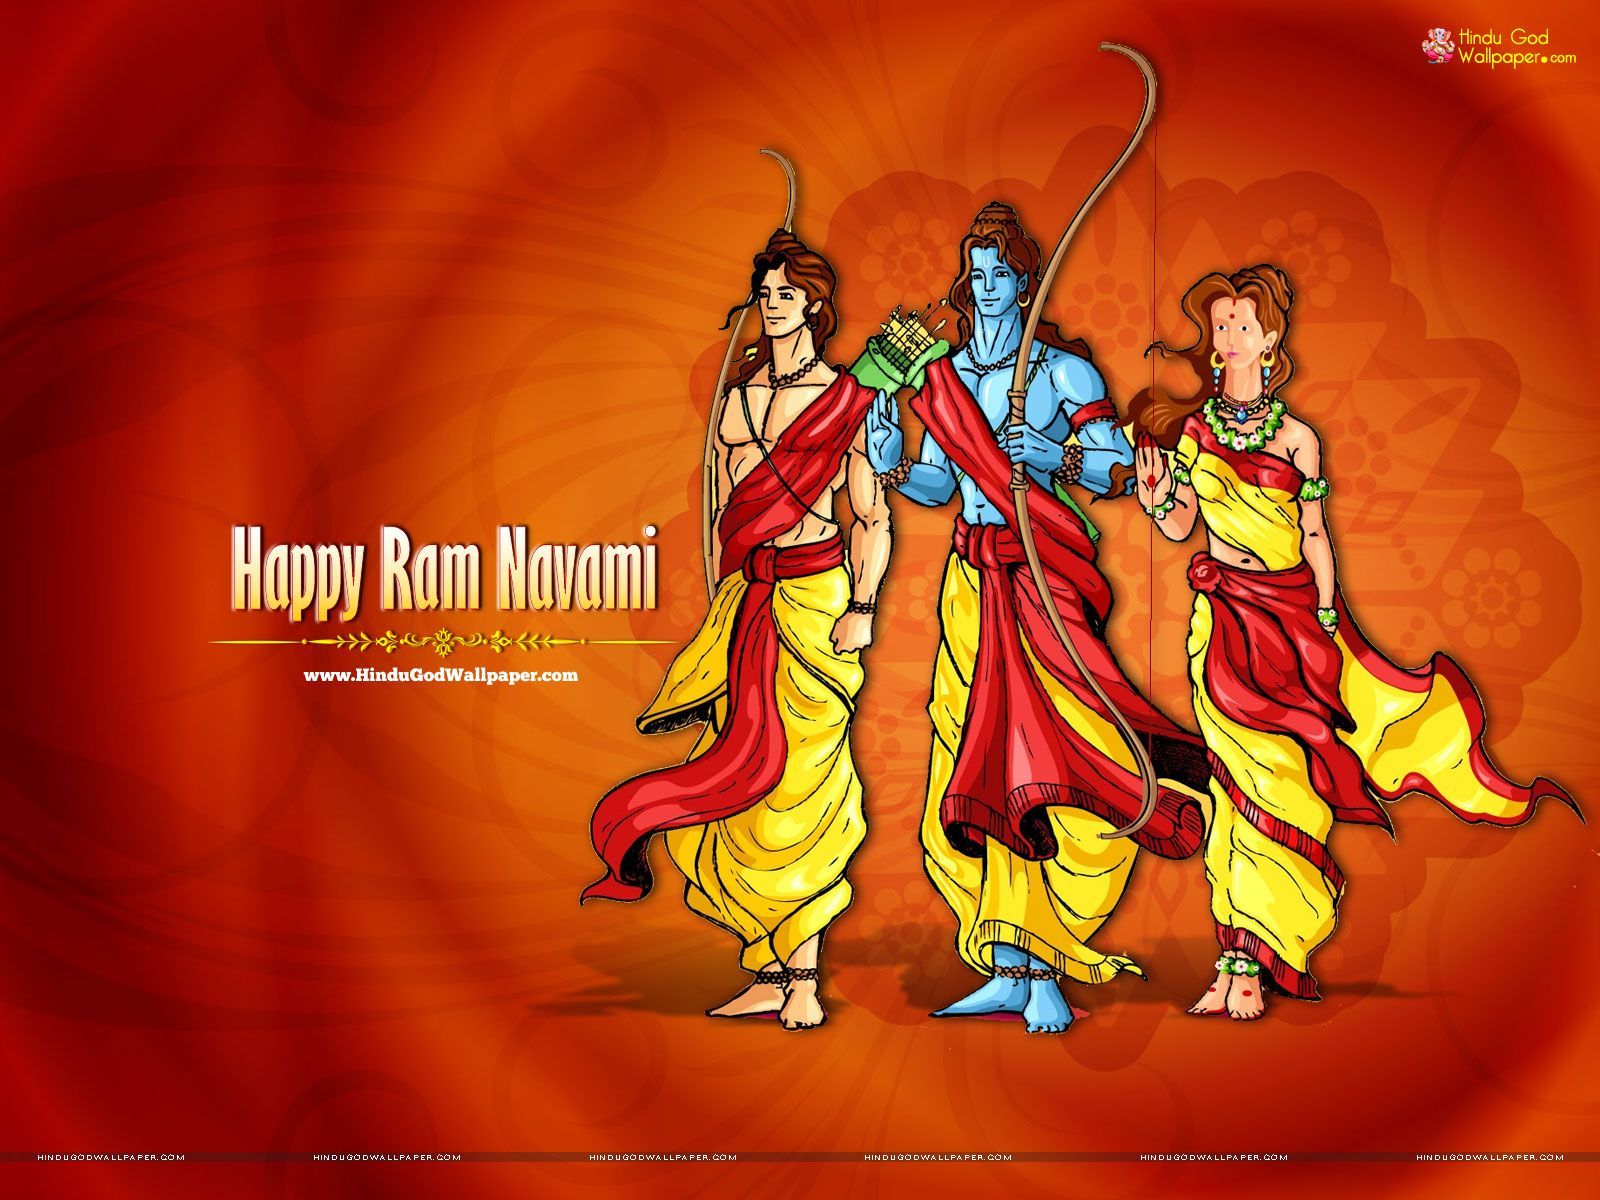 Happy Ram Navami Wallpaper HD Free Download. Happy ram navami